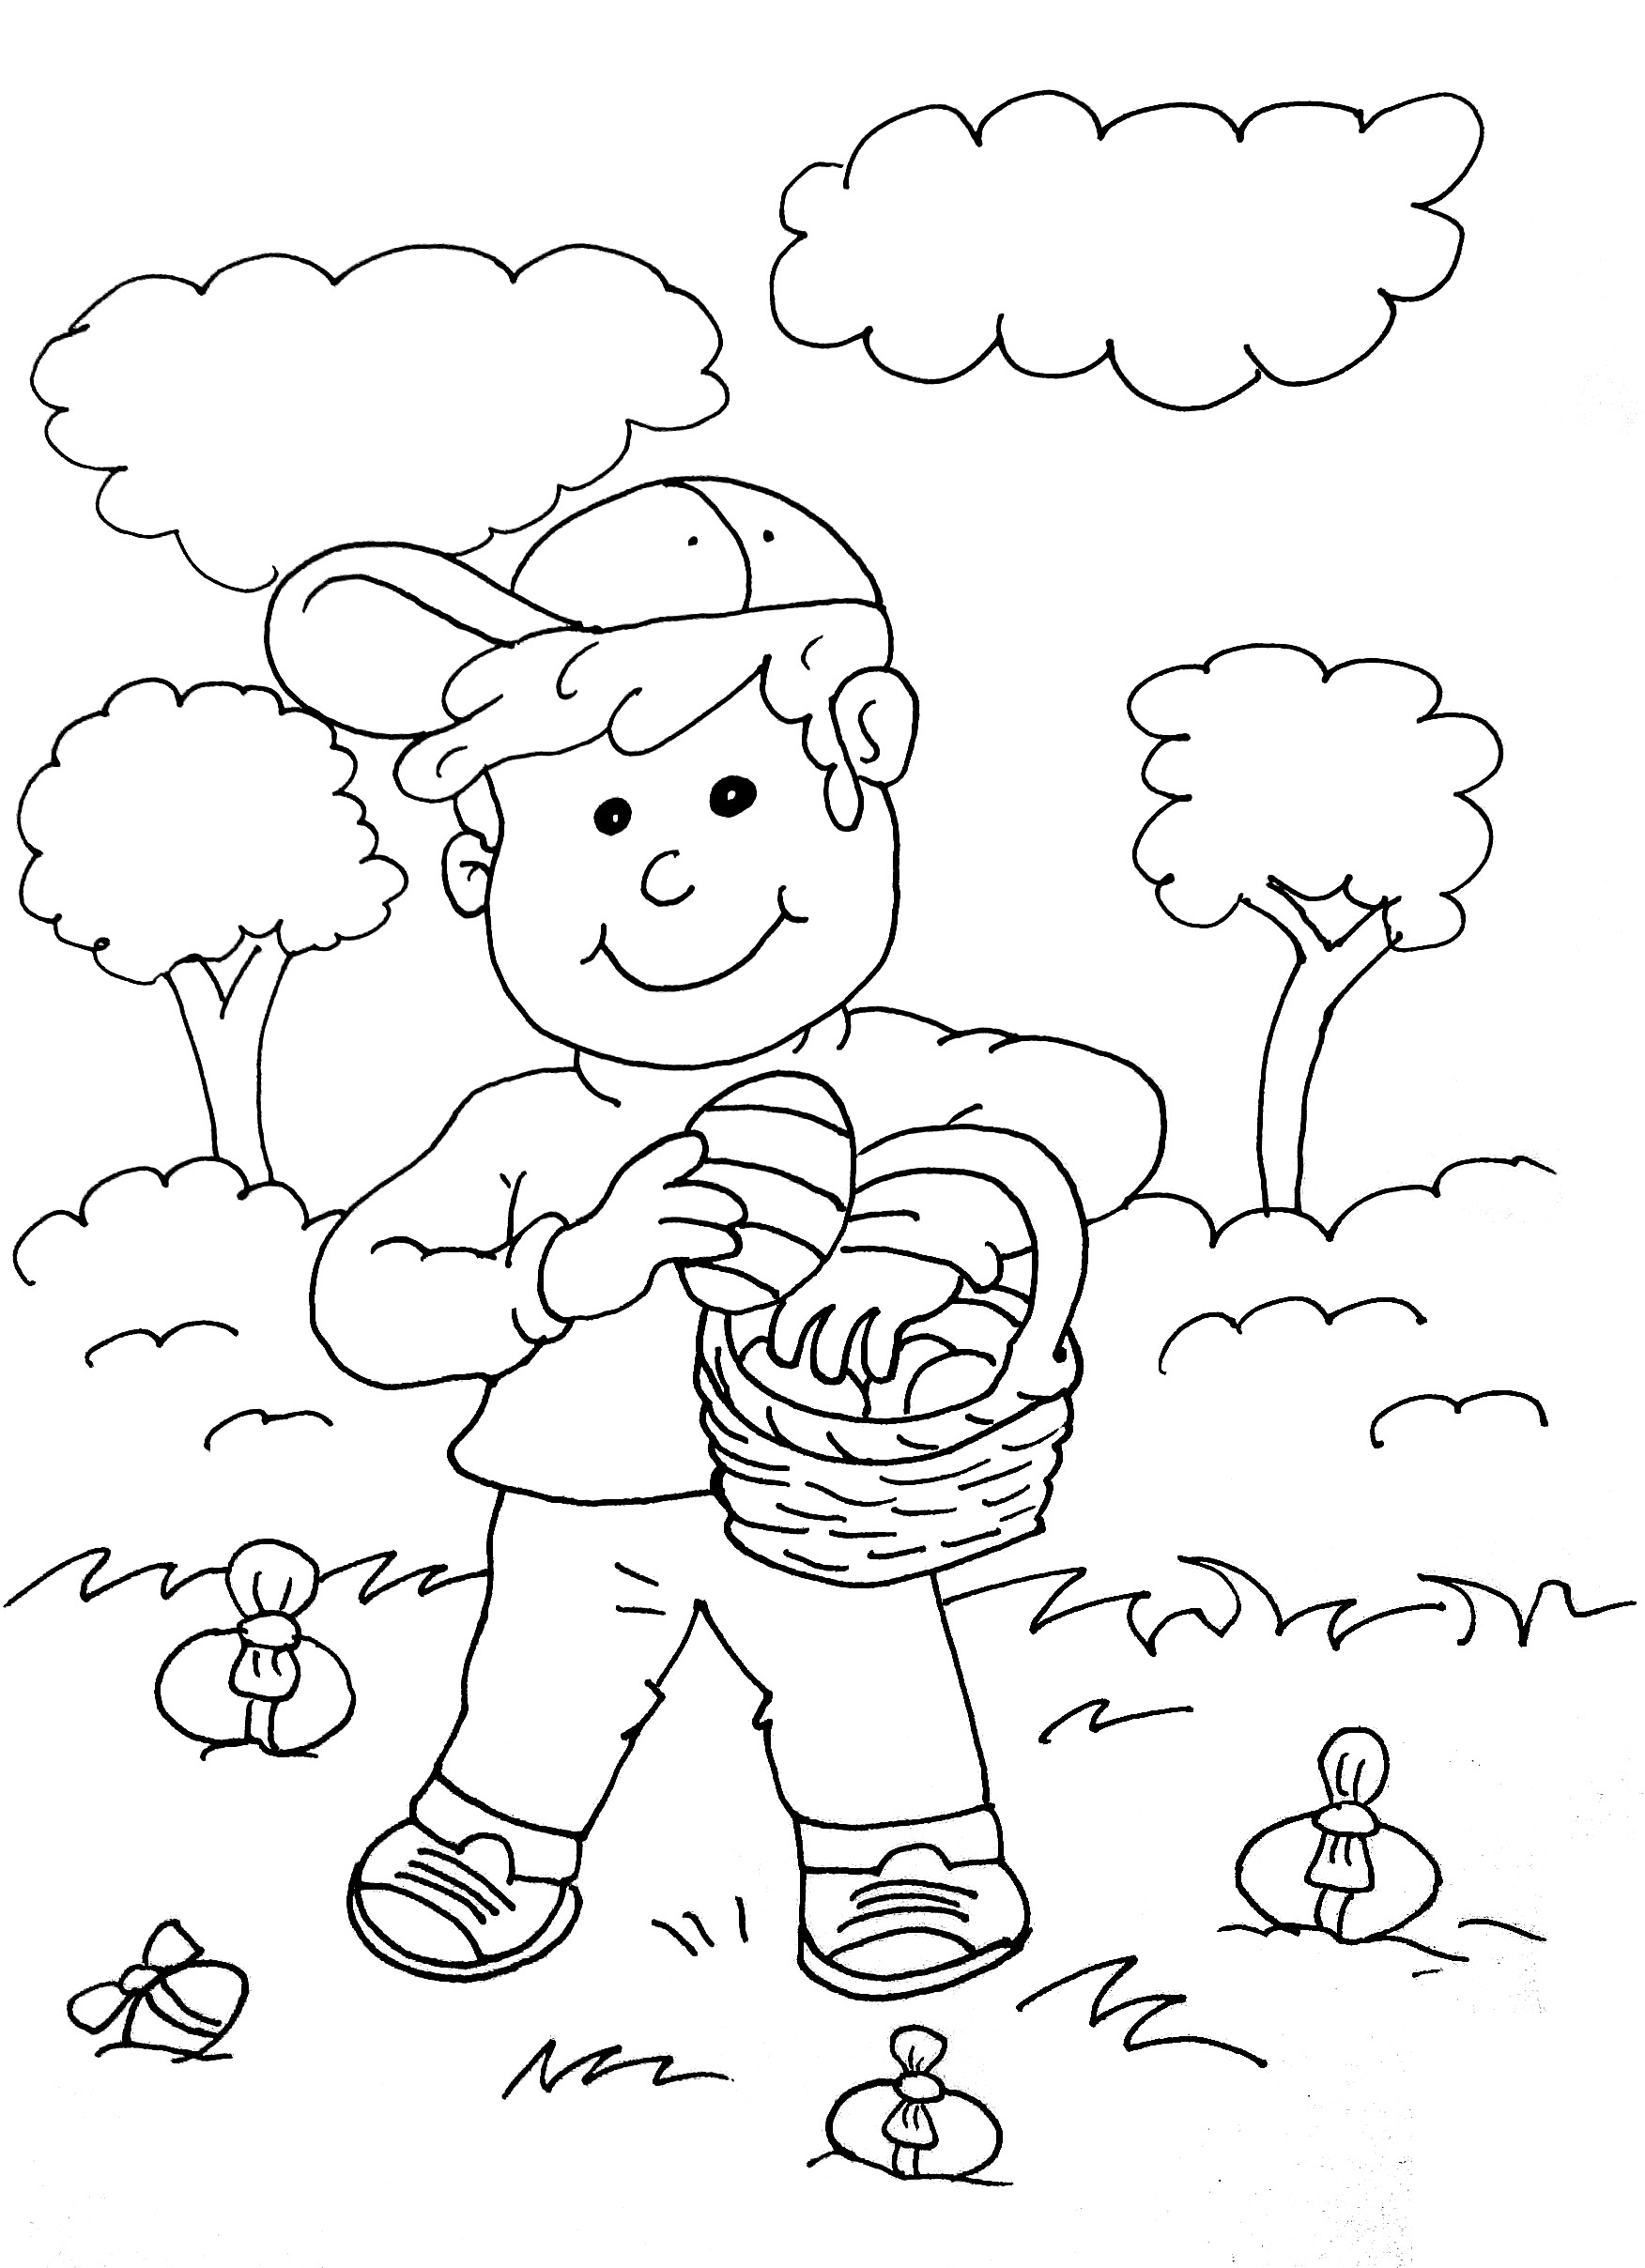 La fameuse chasse aux oeufs de Pâques, tradition adorée des enfants !